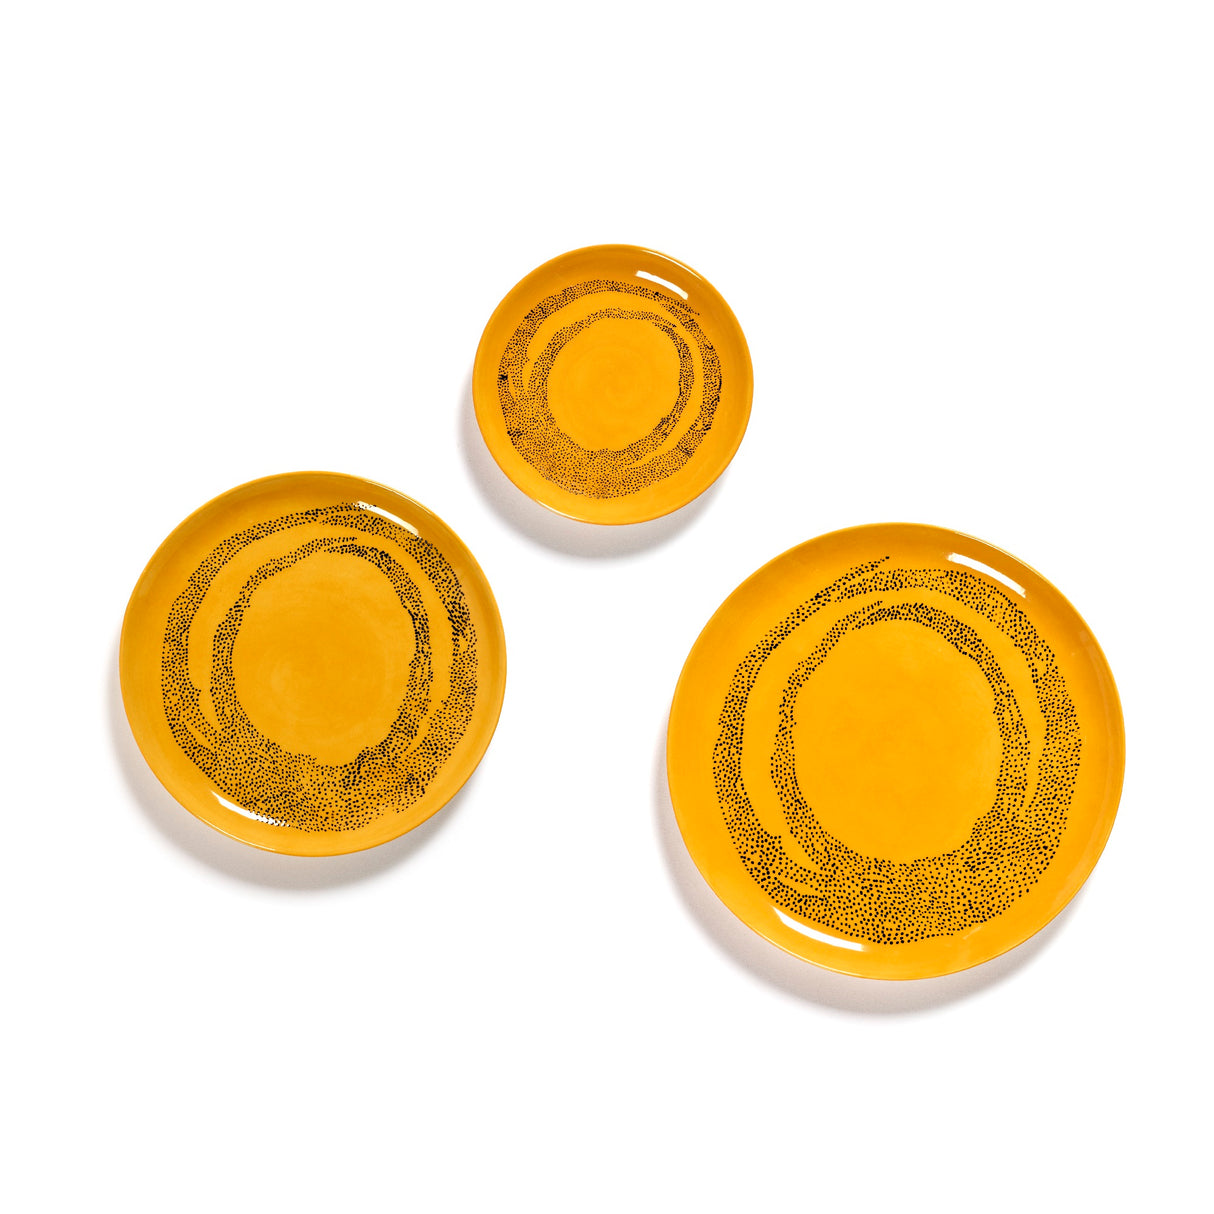 Ottolenghi Teller 2-er Set Sunny Yellow Swirl-Dots, Gelb-Schwarz, D 26,5 cm